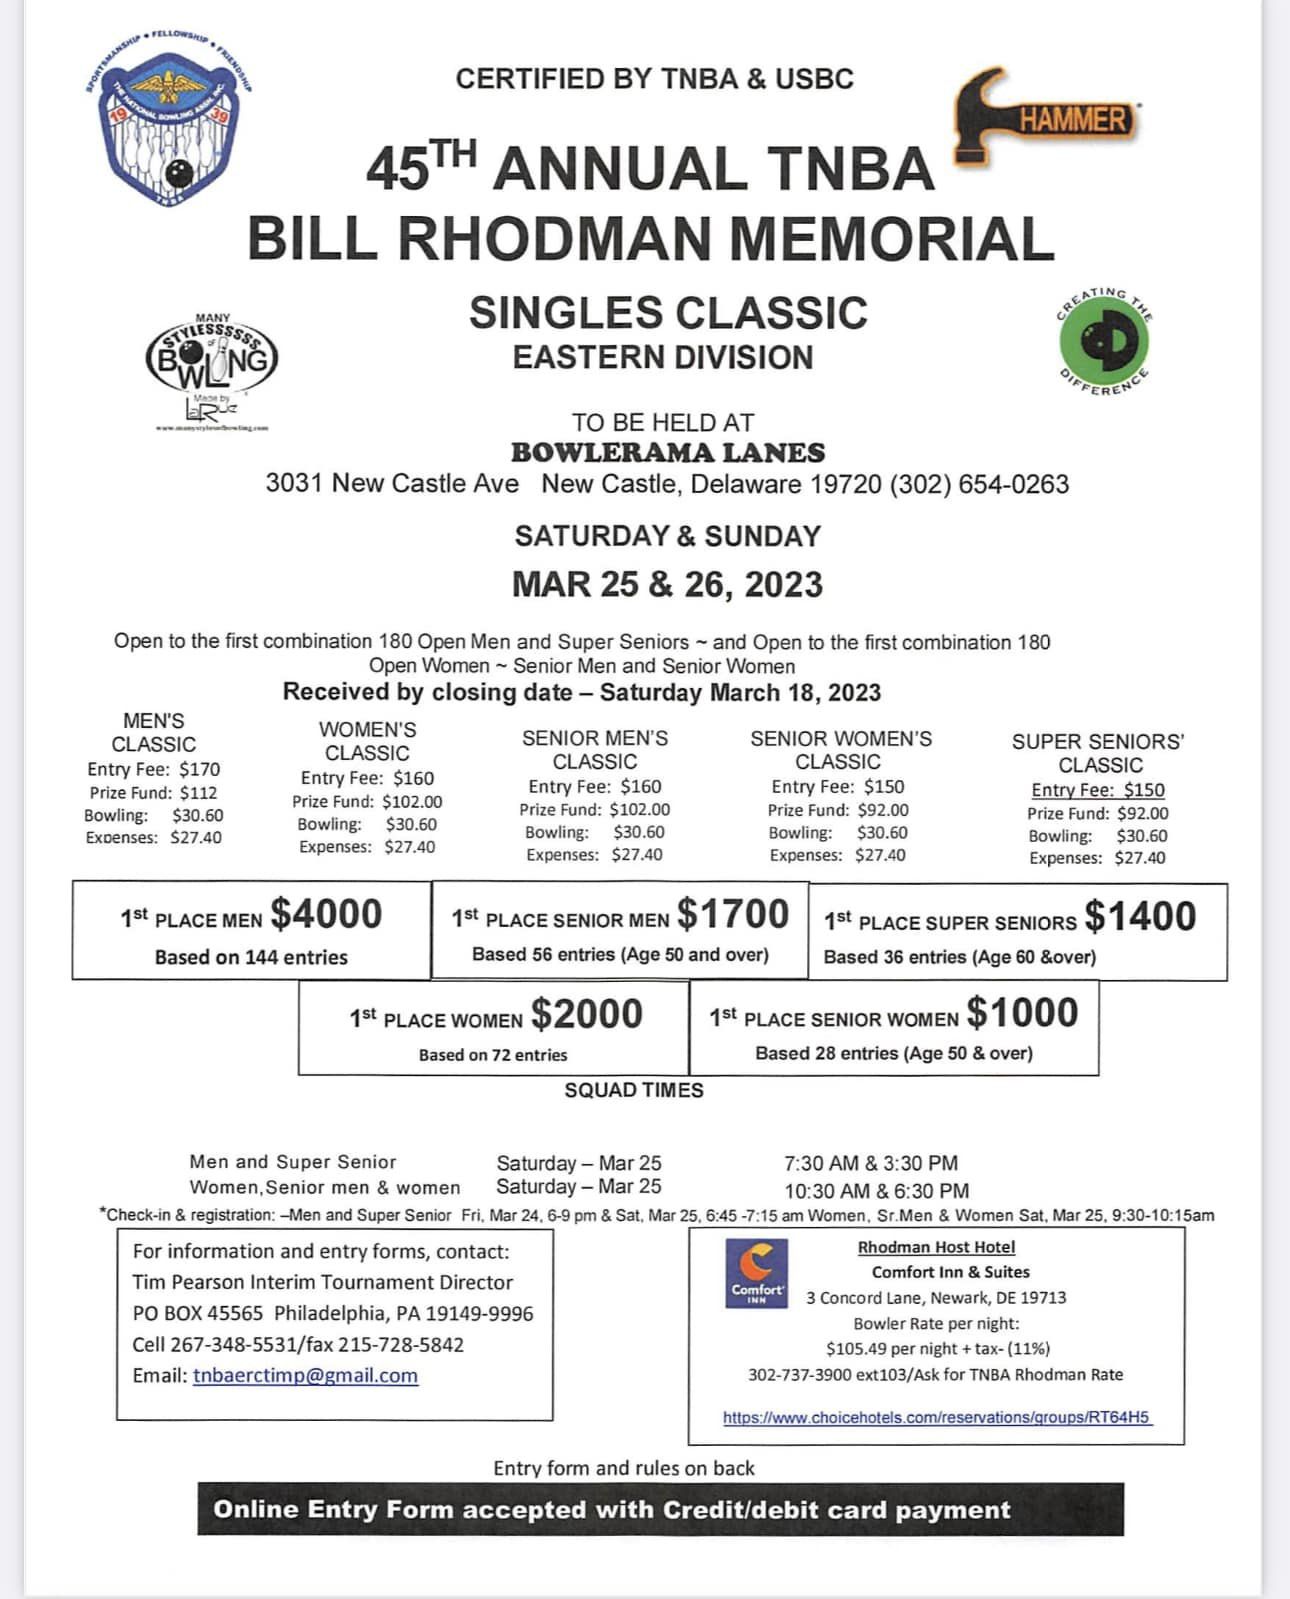 45th Annual TNBA Bill Rhodman Memorial Singles Classic Bowling